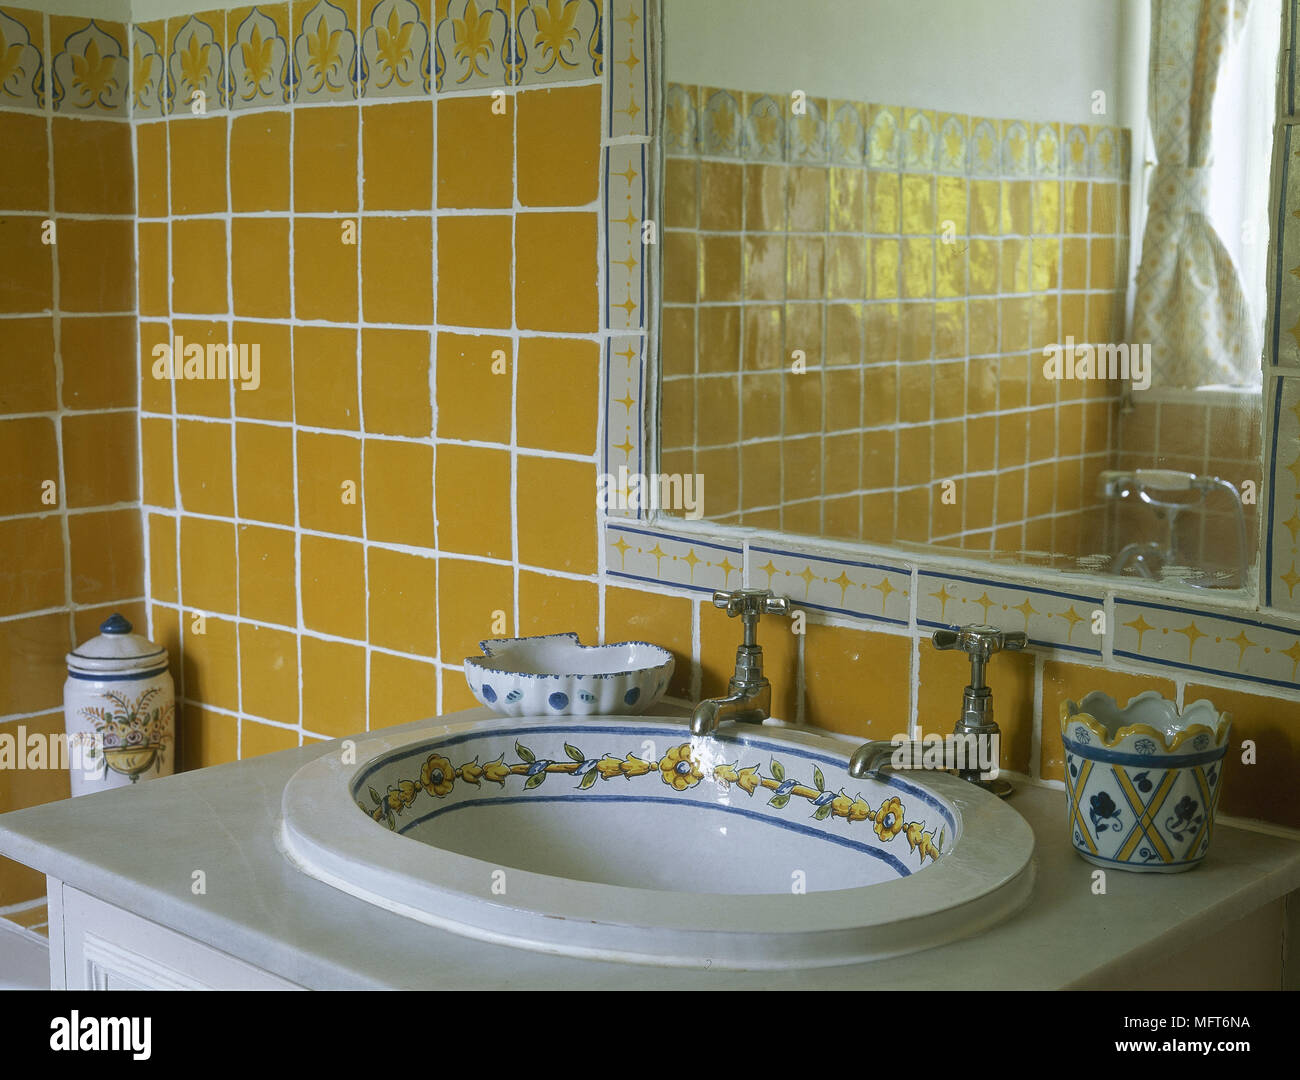 Land Bad detail gelben Fliesen Waschbecken Keramik dekoriert in Marmor  Interieur Badezimmer Waschbecken set Stockfotografie - Alamy